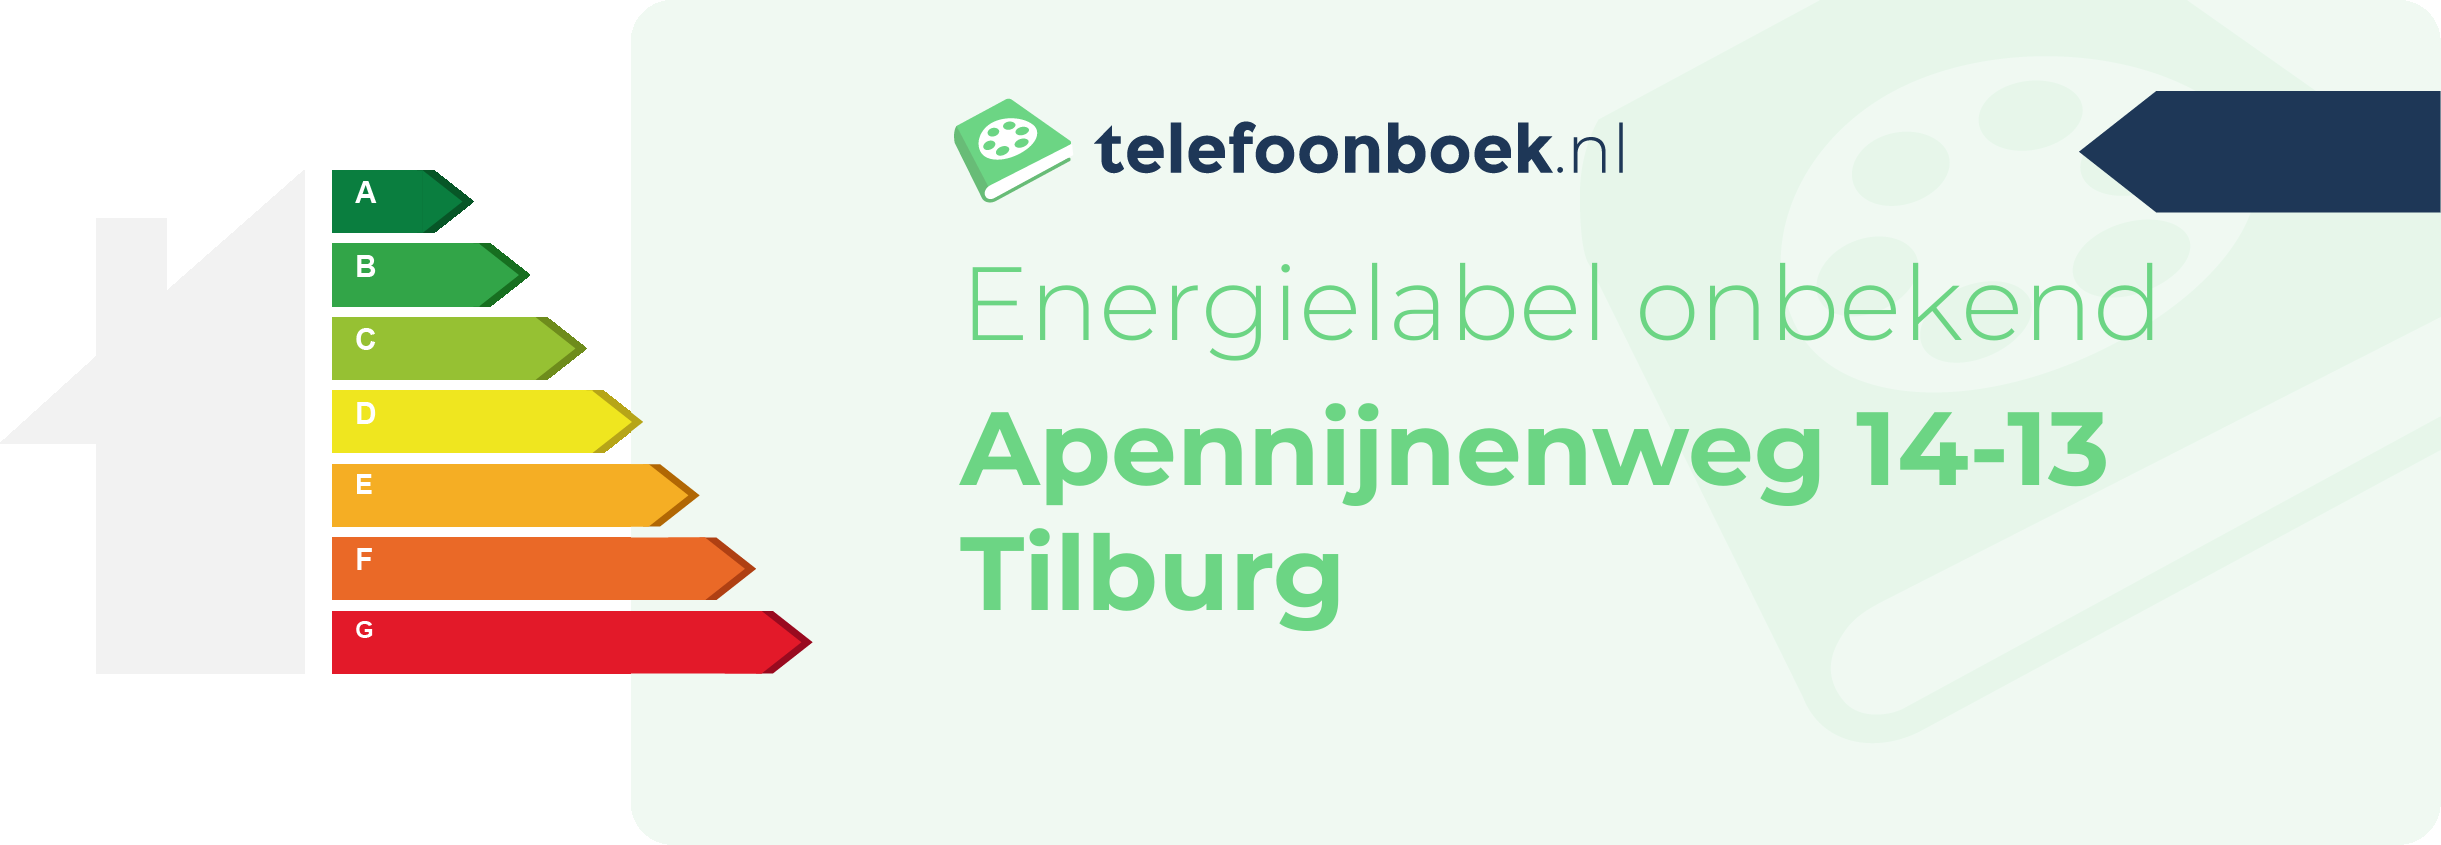 Energielabel Apennijnenweg 14-13 Tilburg